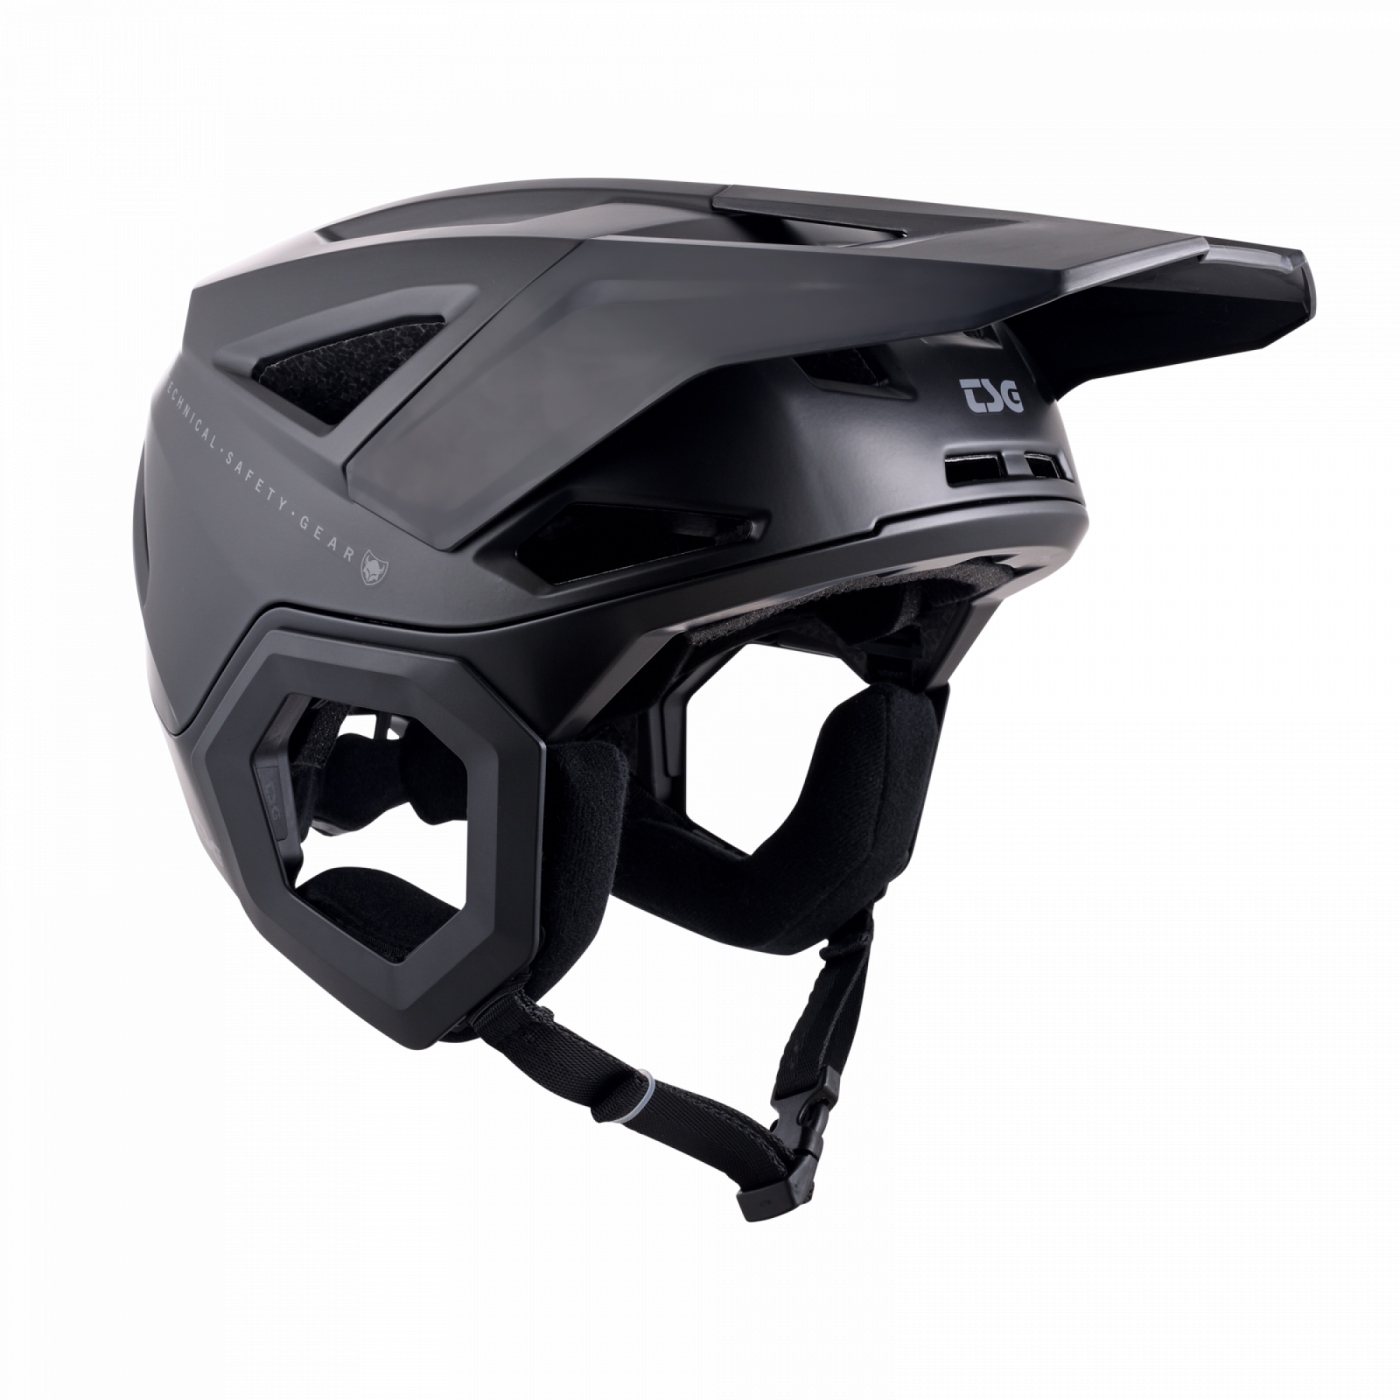 Produktbild von TSG Prevention Solid Color Helm - satin black